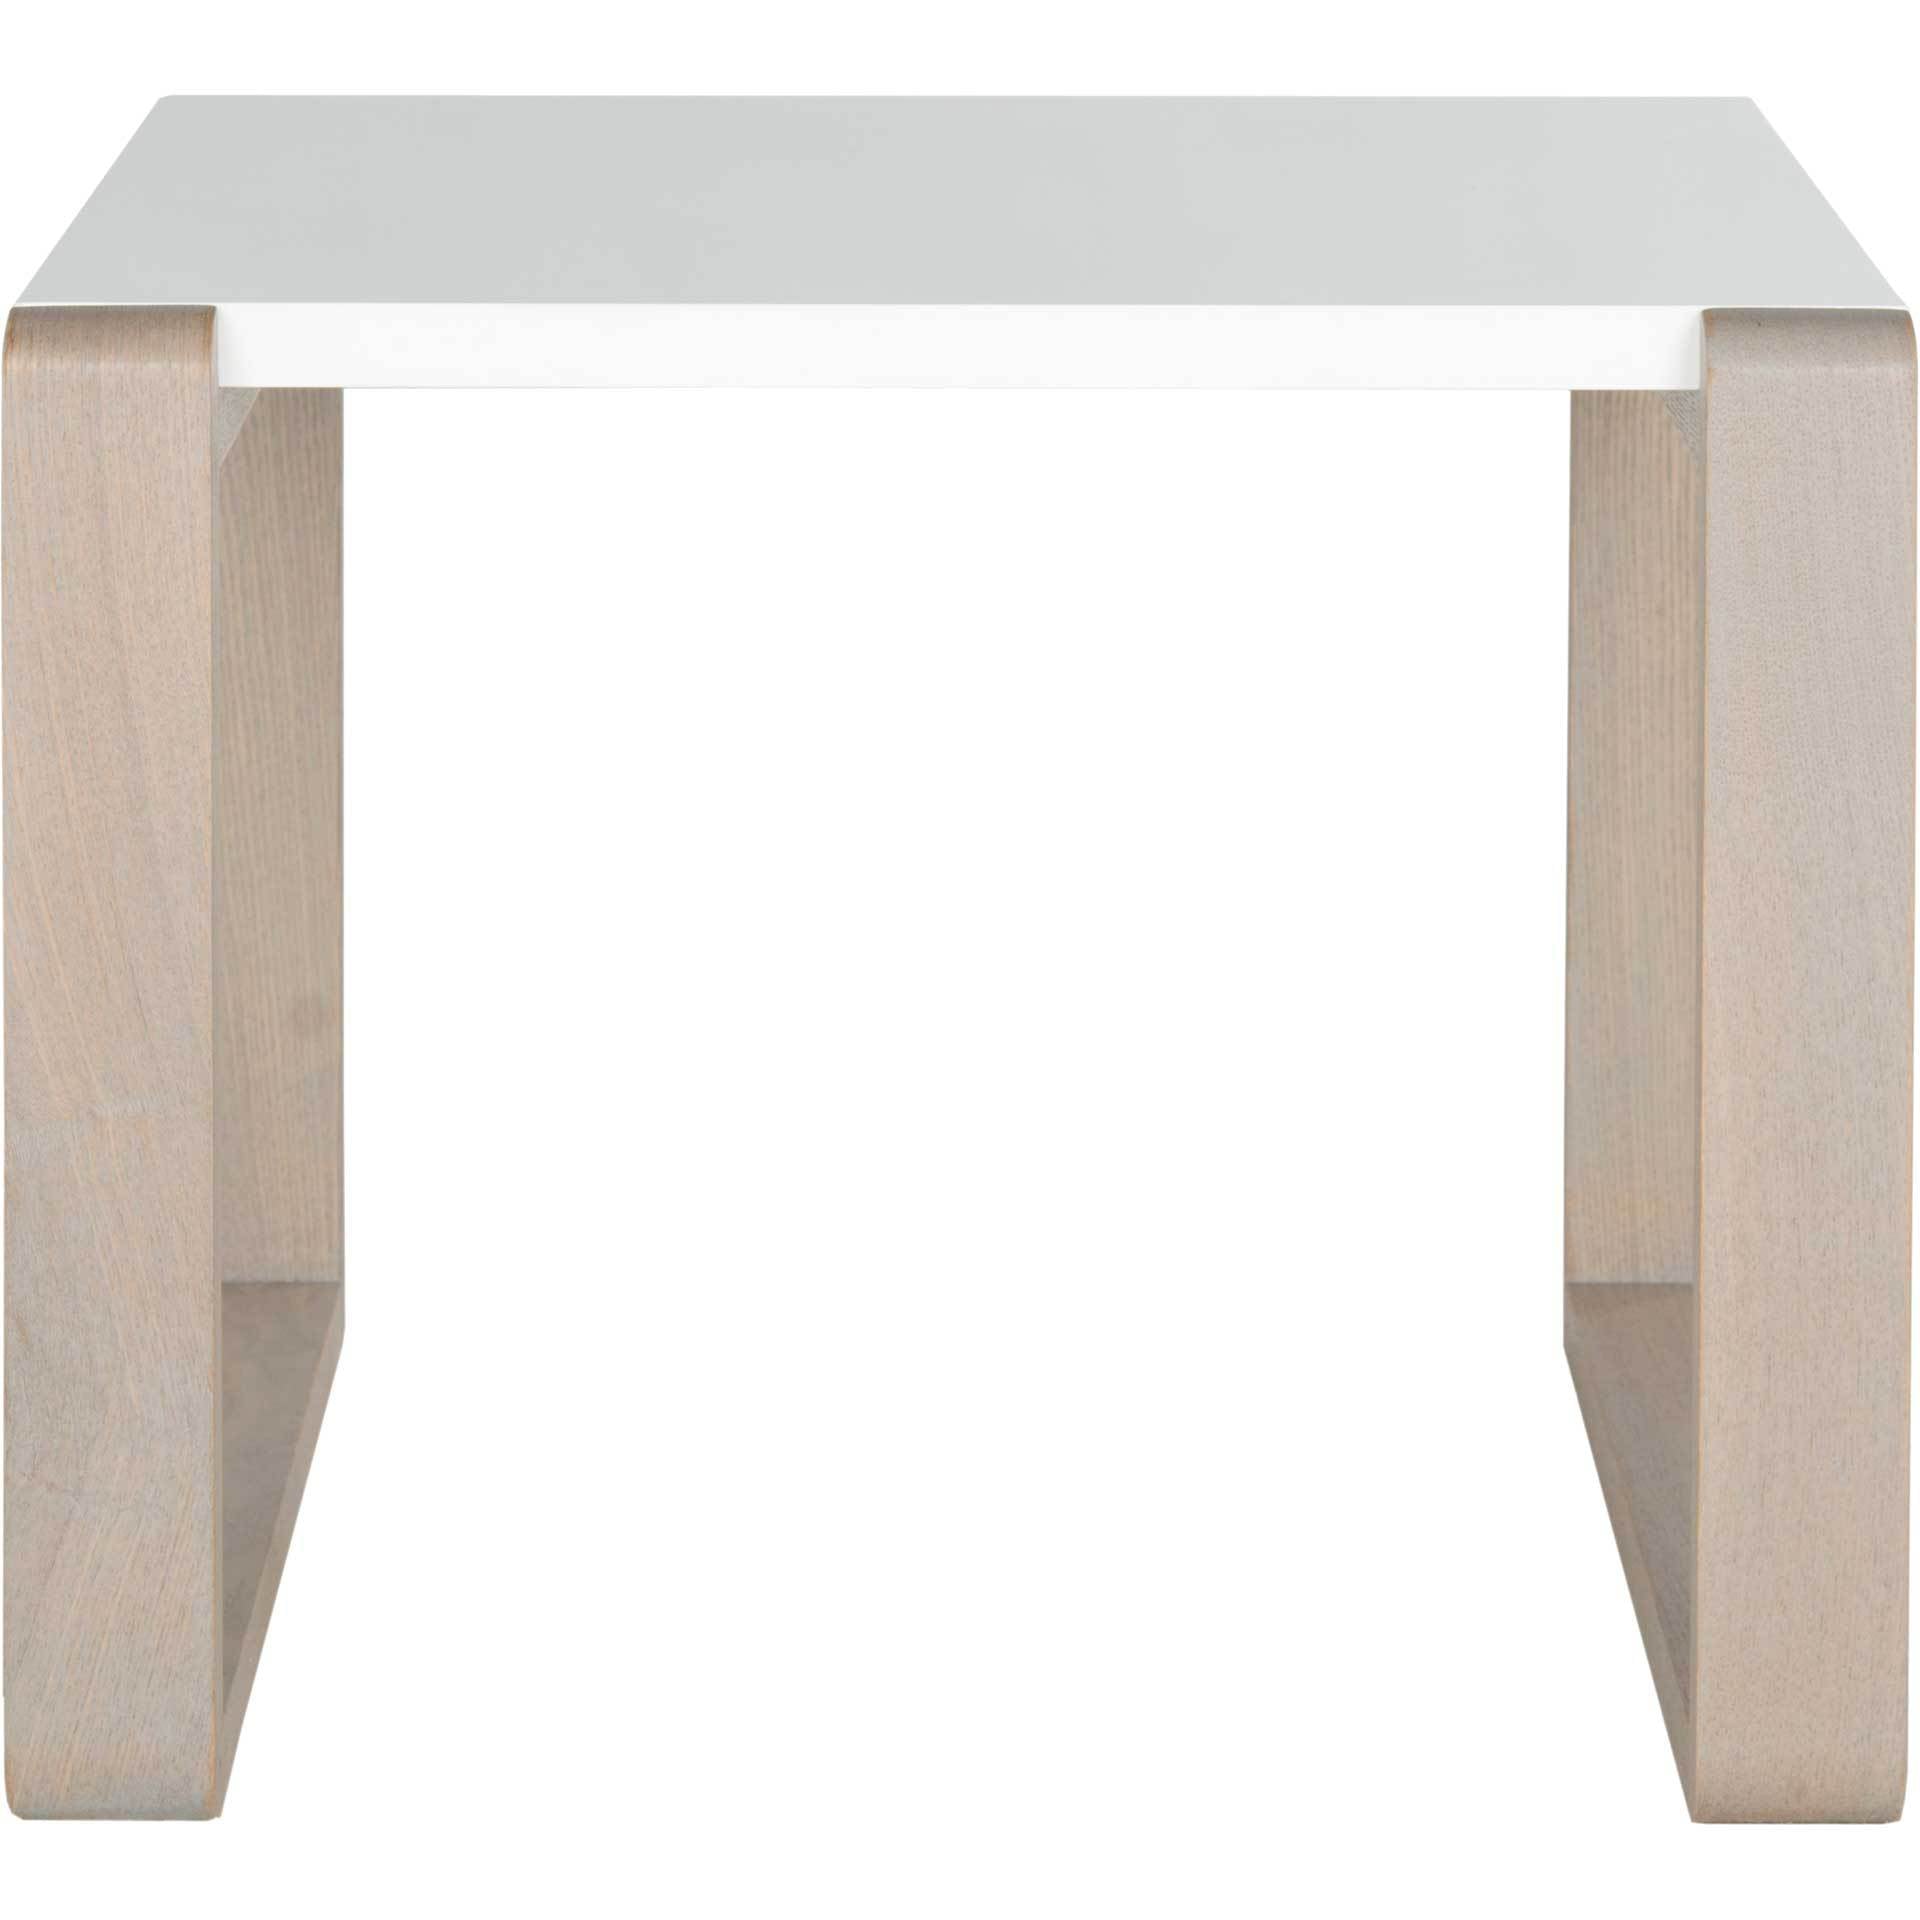 Balin Lacquer End Table White/Gray